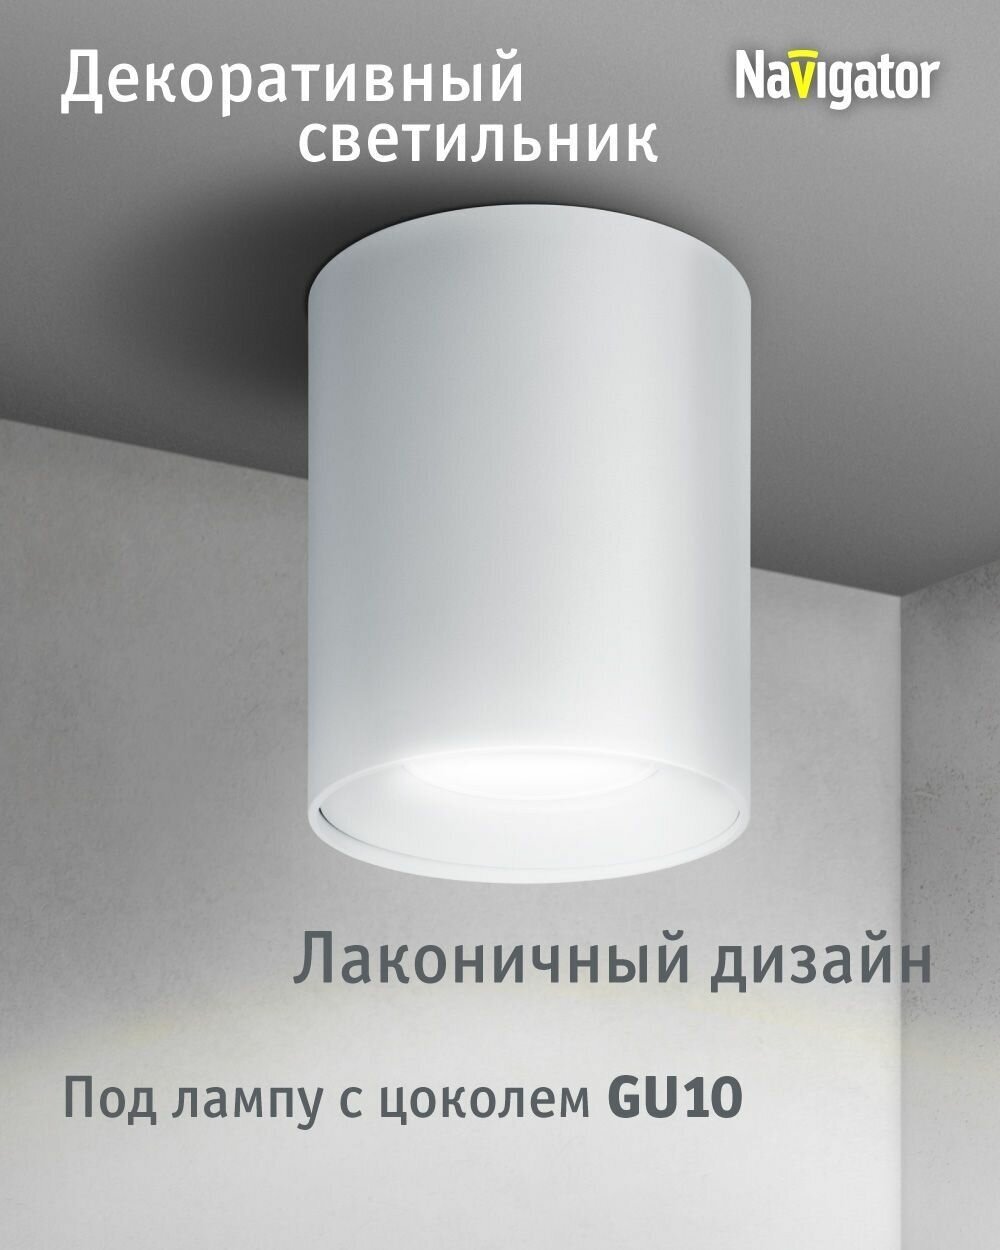 Декоративный светильник Navigator 93 326 накладной для ламп с цоколем GU10, белый